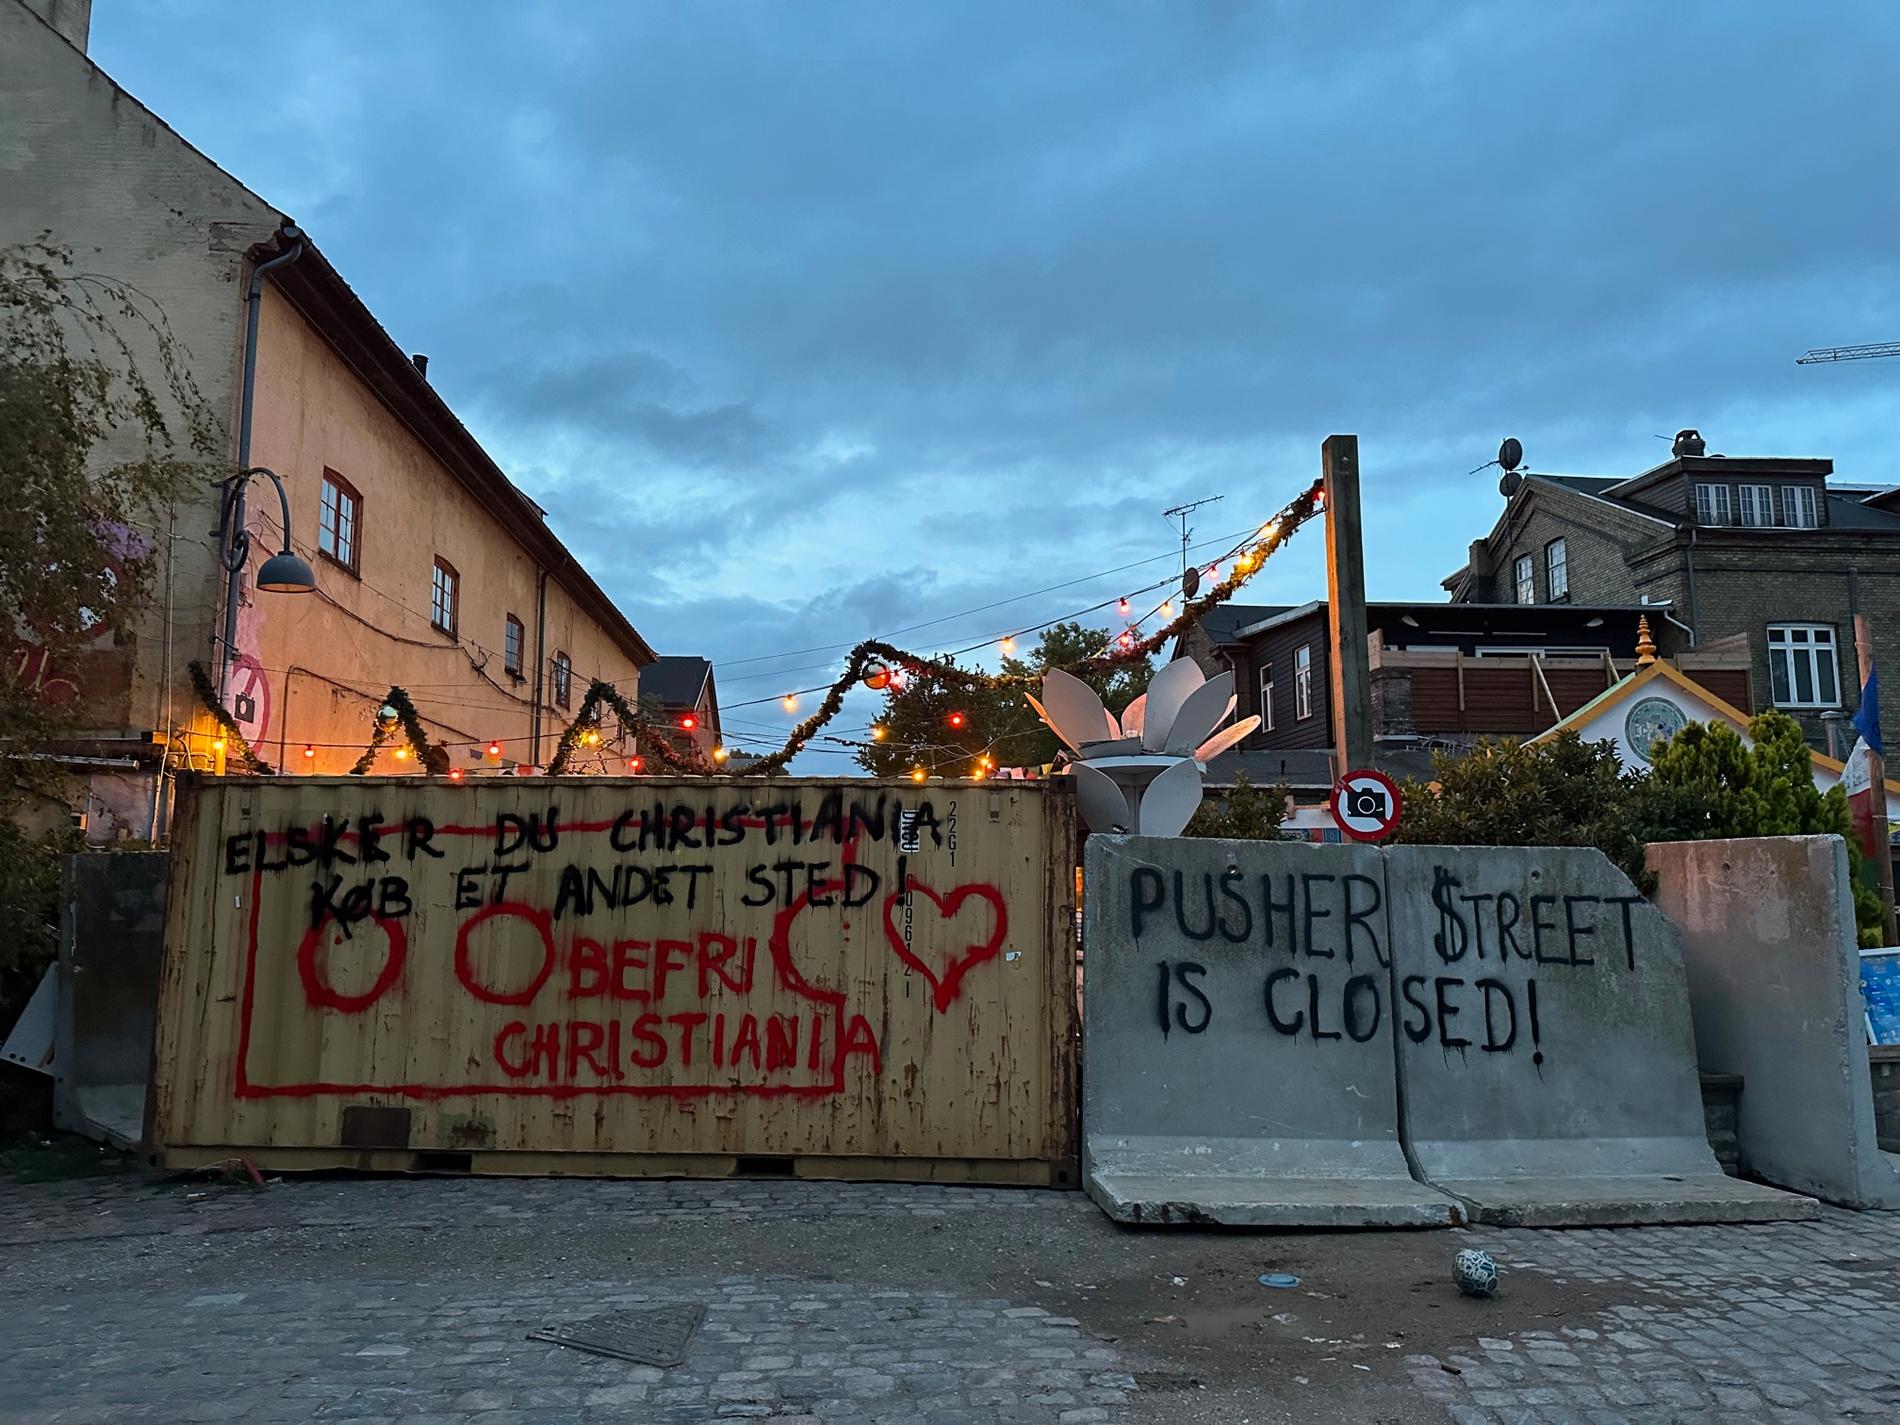 Så här såg det ut vid Pusher Street på Christiania på tisdagsmorgonen.